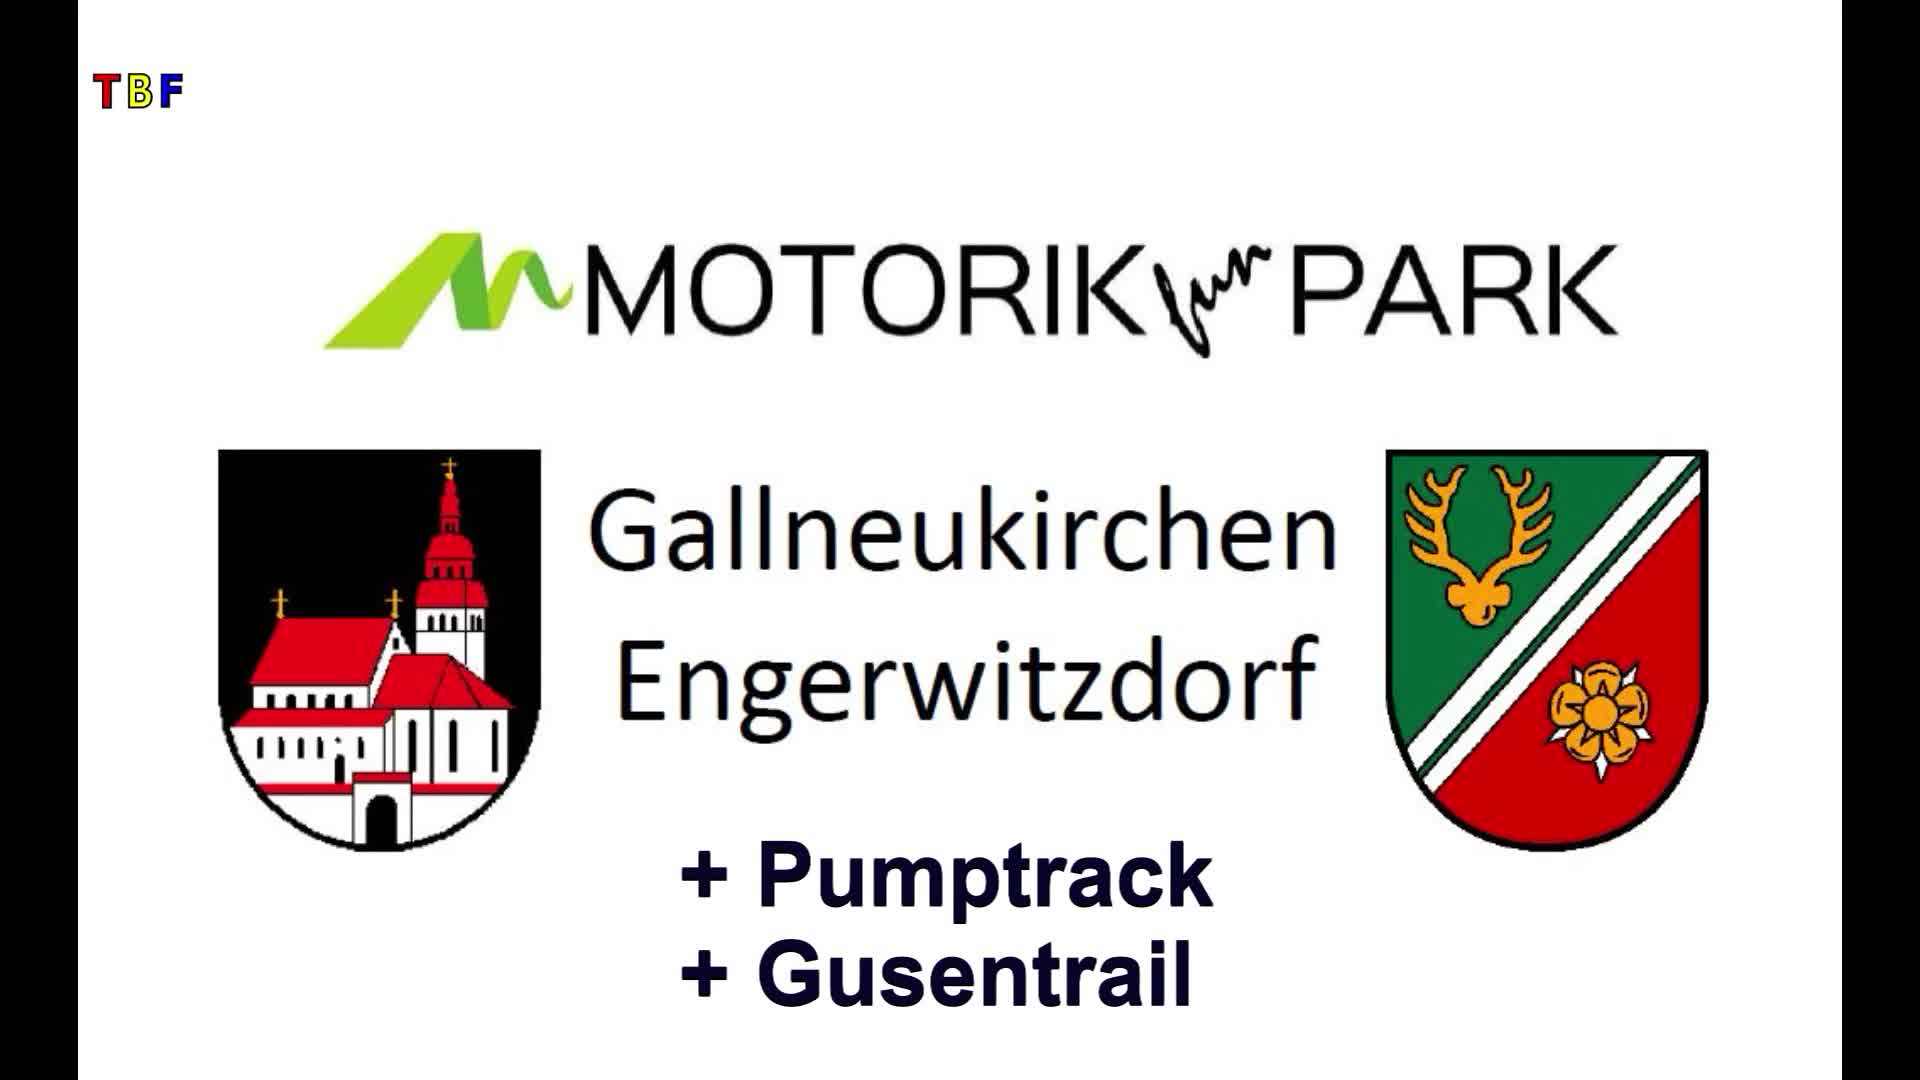 Motorikpark Gallneukirchen Engerwitzdorf